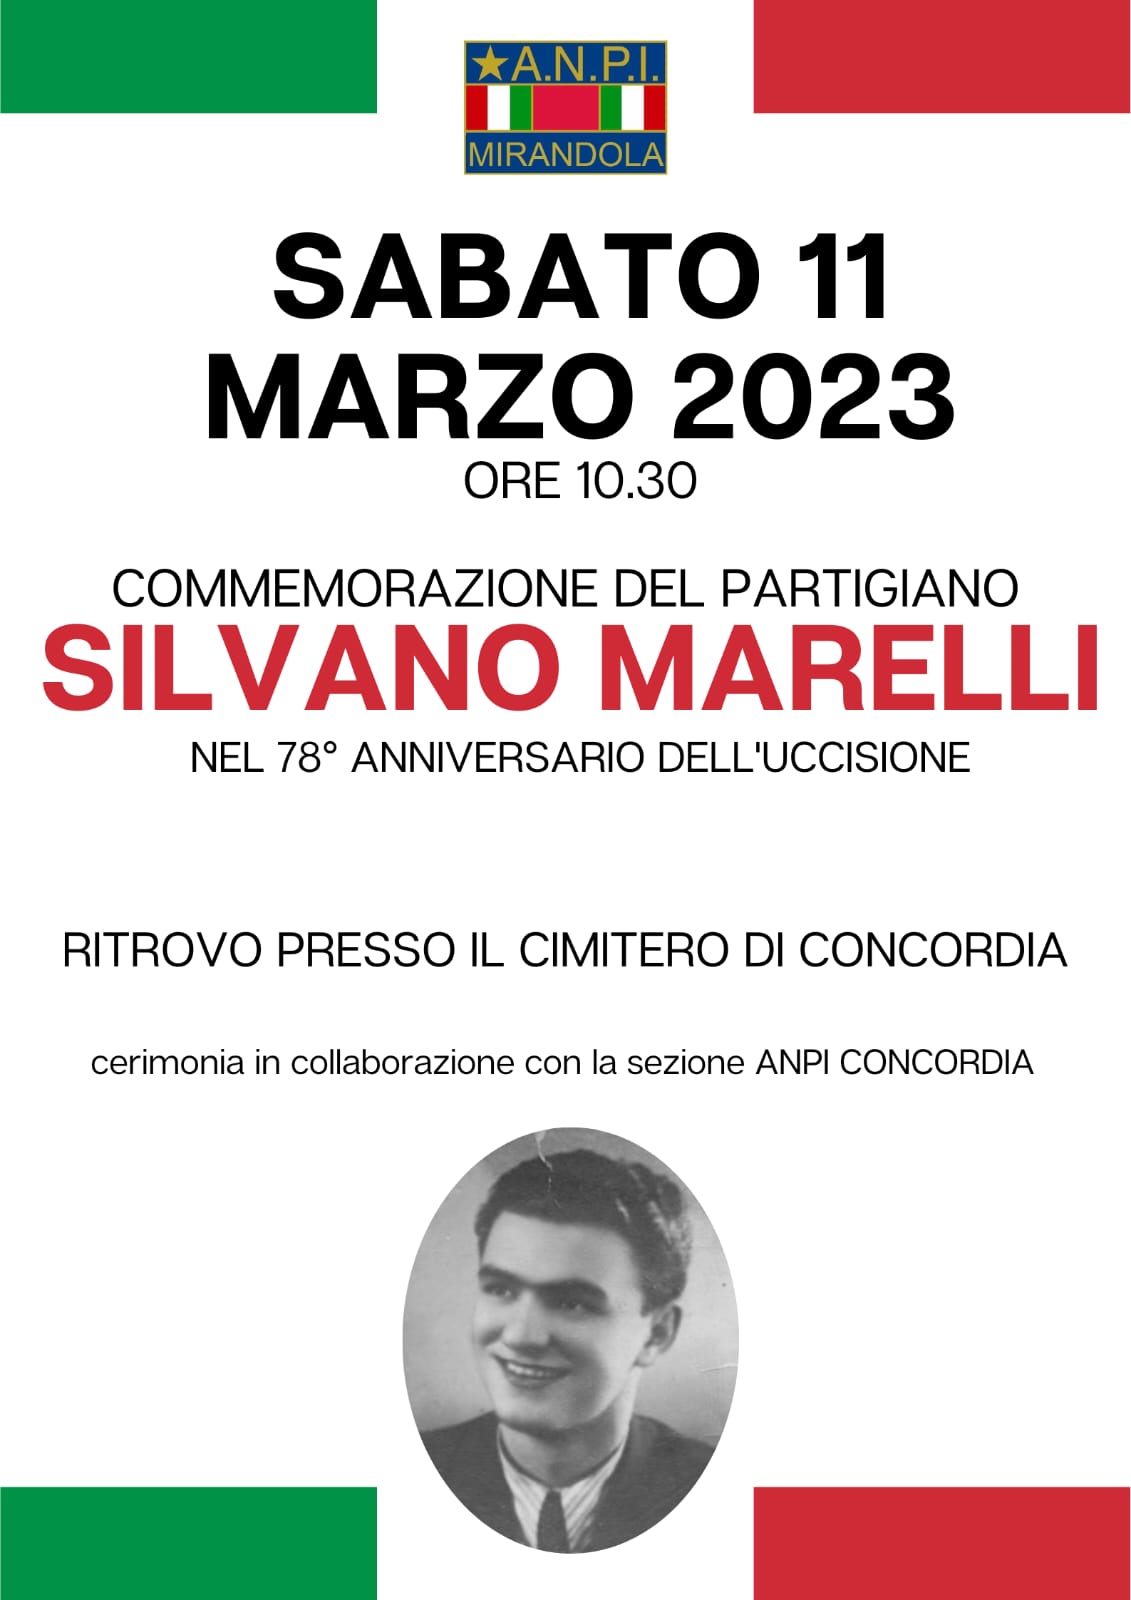 Commemorazione del Partigiano Silvano Marelli